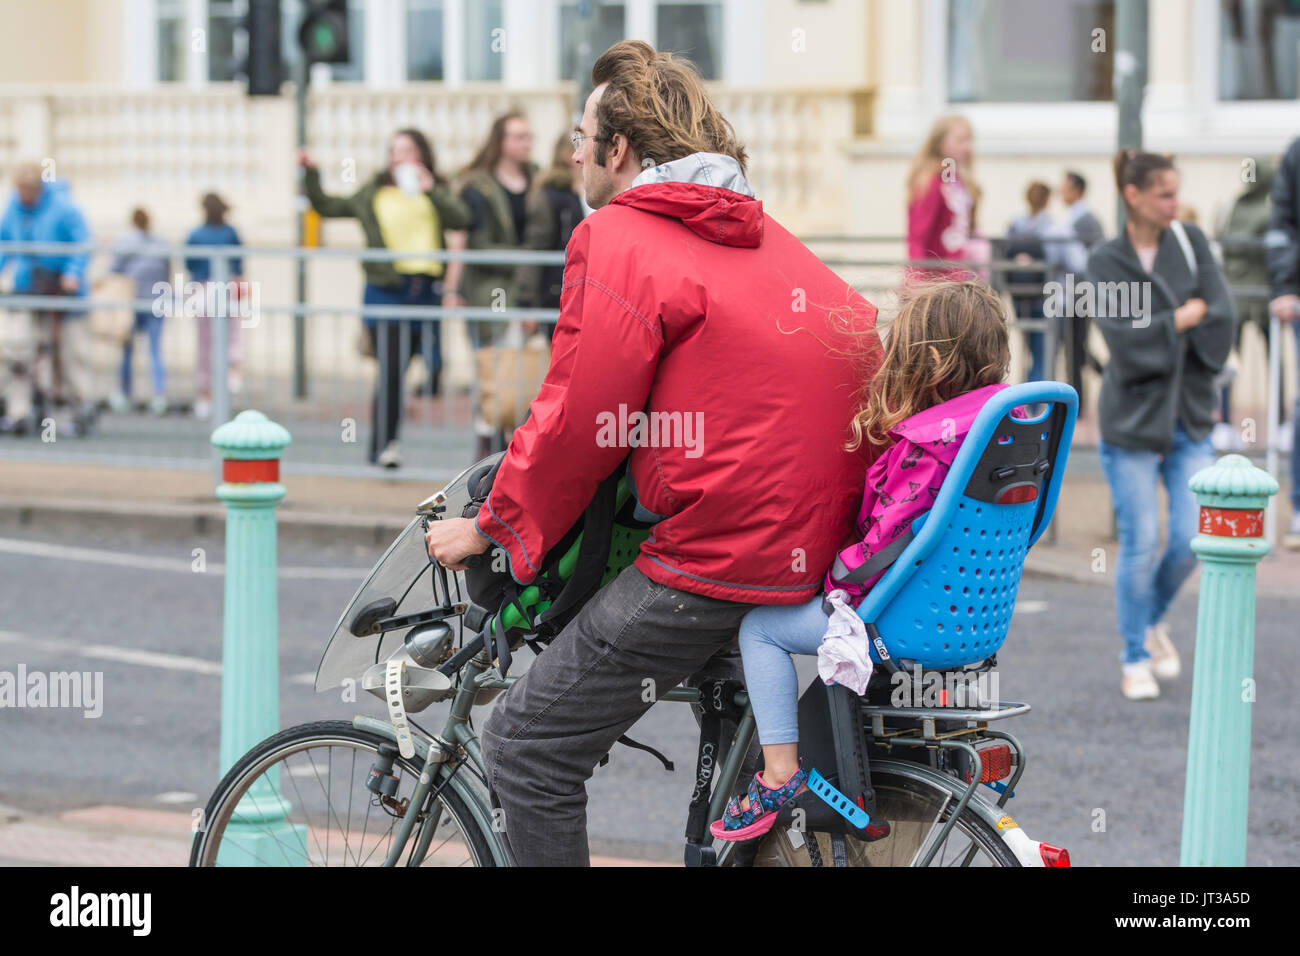 L'homme à vélo avec un enfant dans un siège enfant, aussi bien ne pas porter le casque. Cycliste irresponsable. Banque D'Images